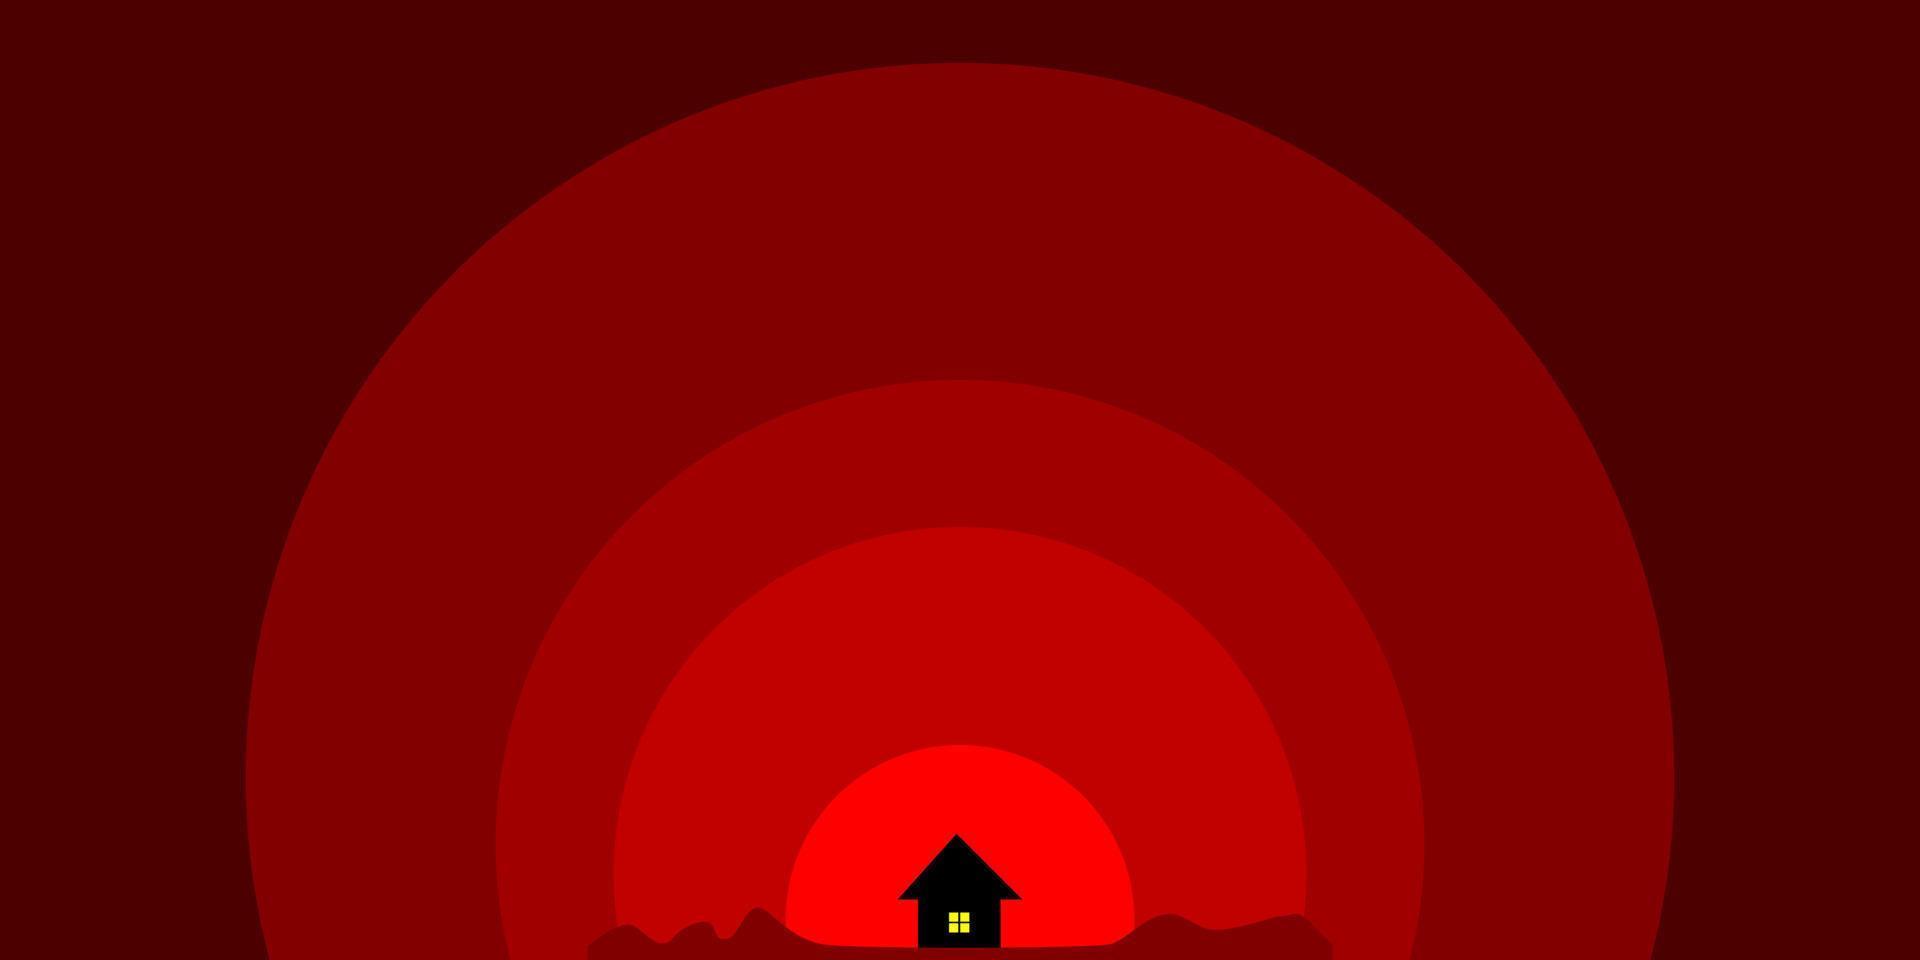 cielo rojo con casita en el medio vector